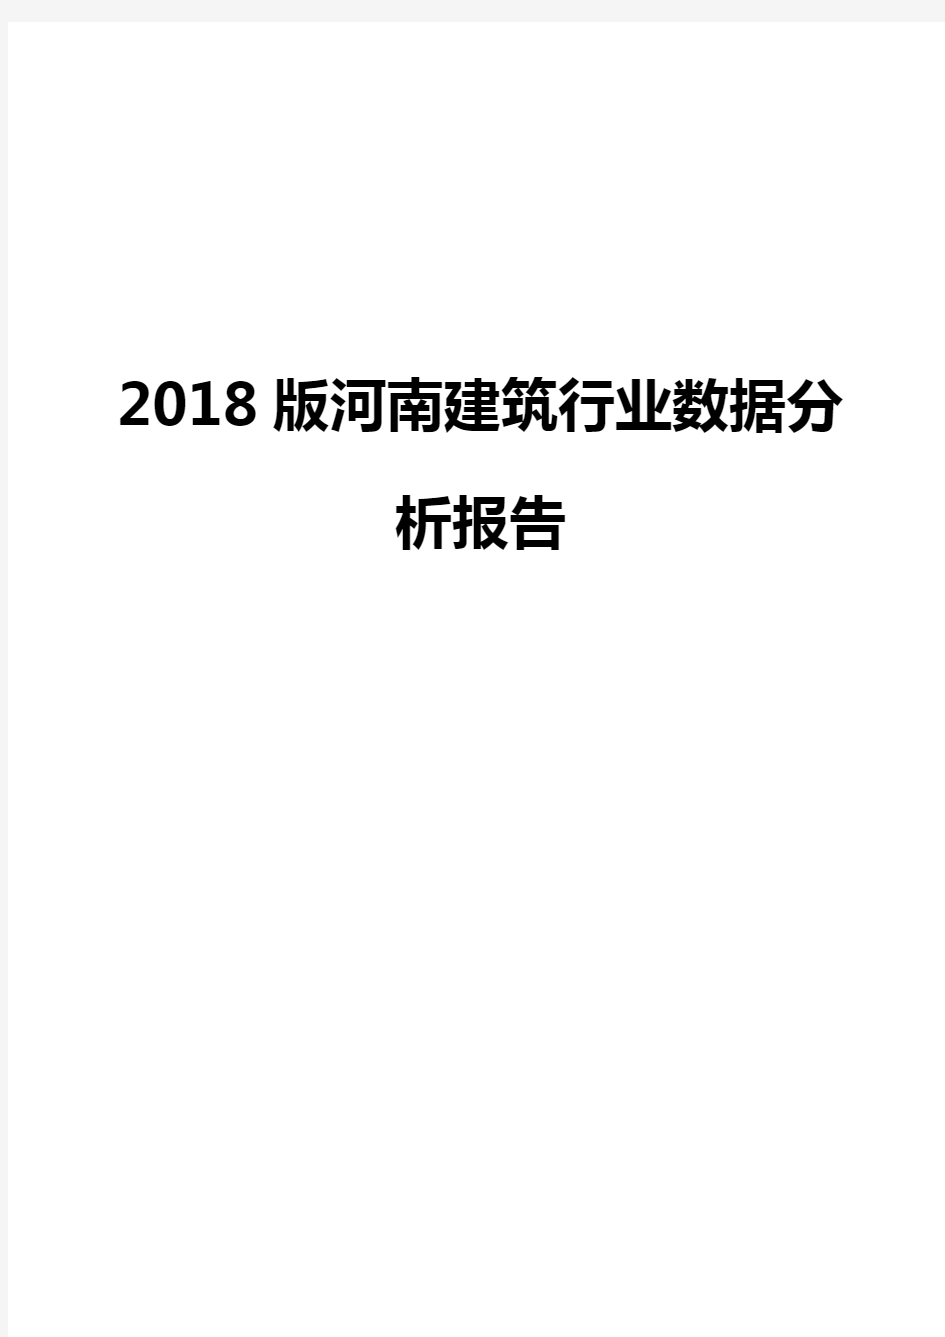 2018版河南建筑行业数据分析报告